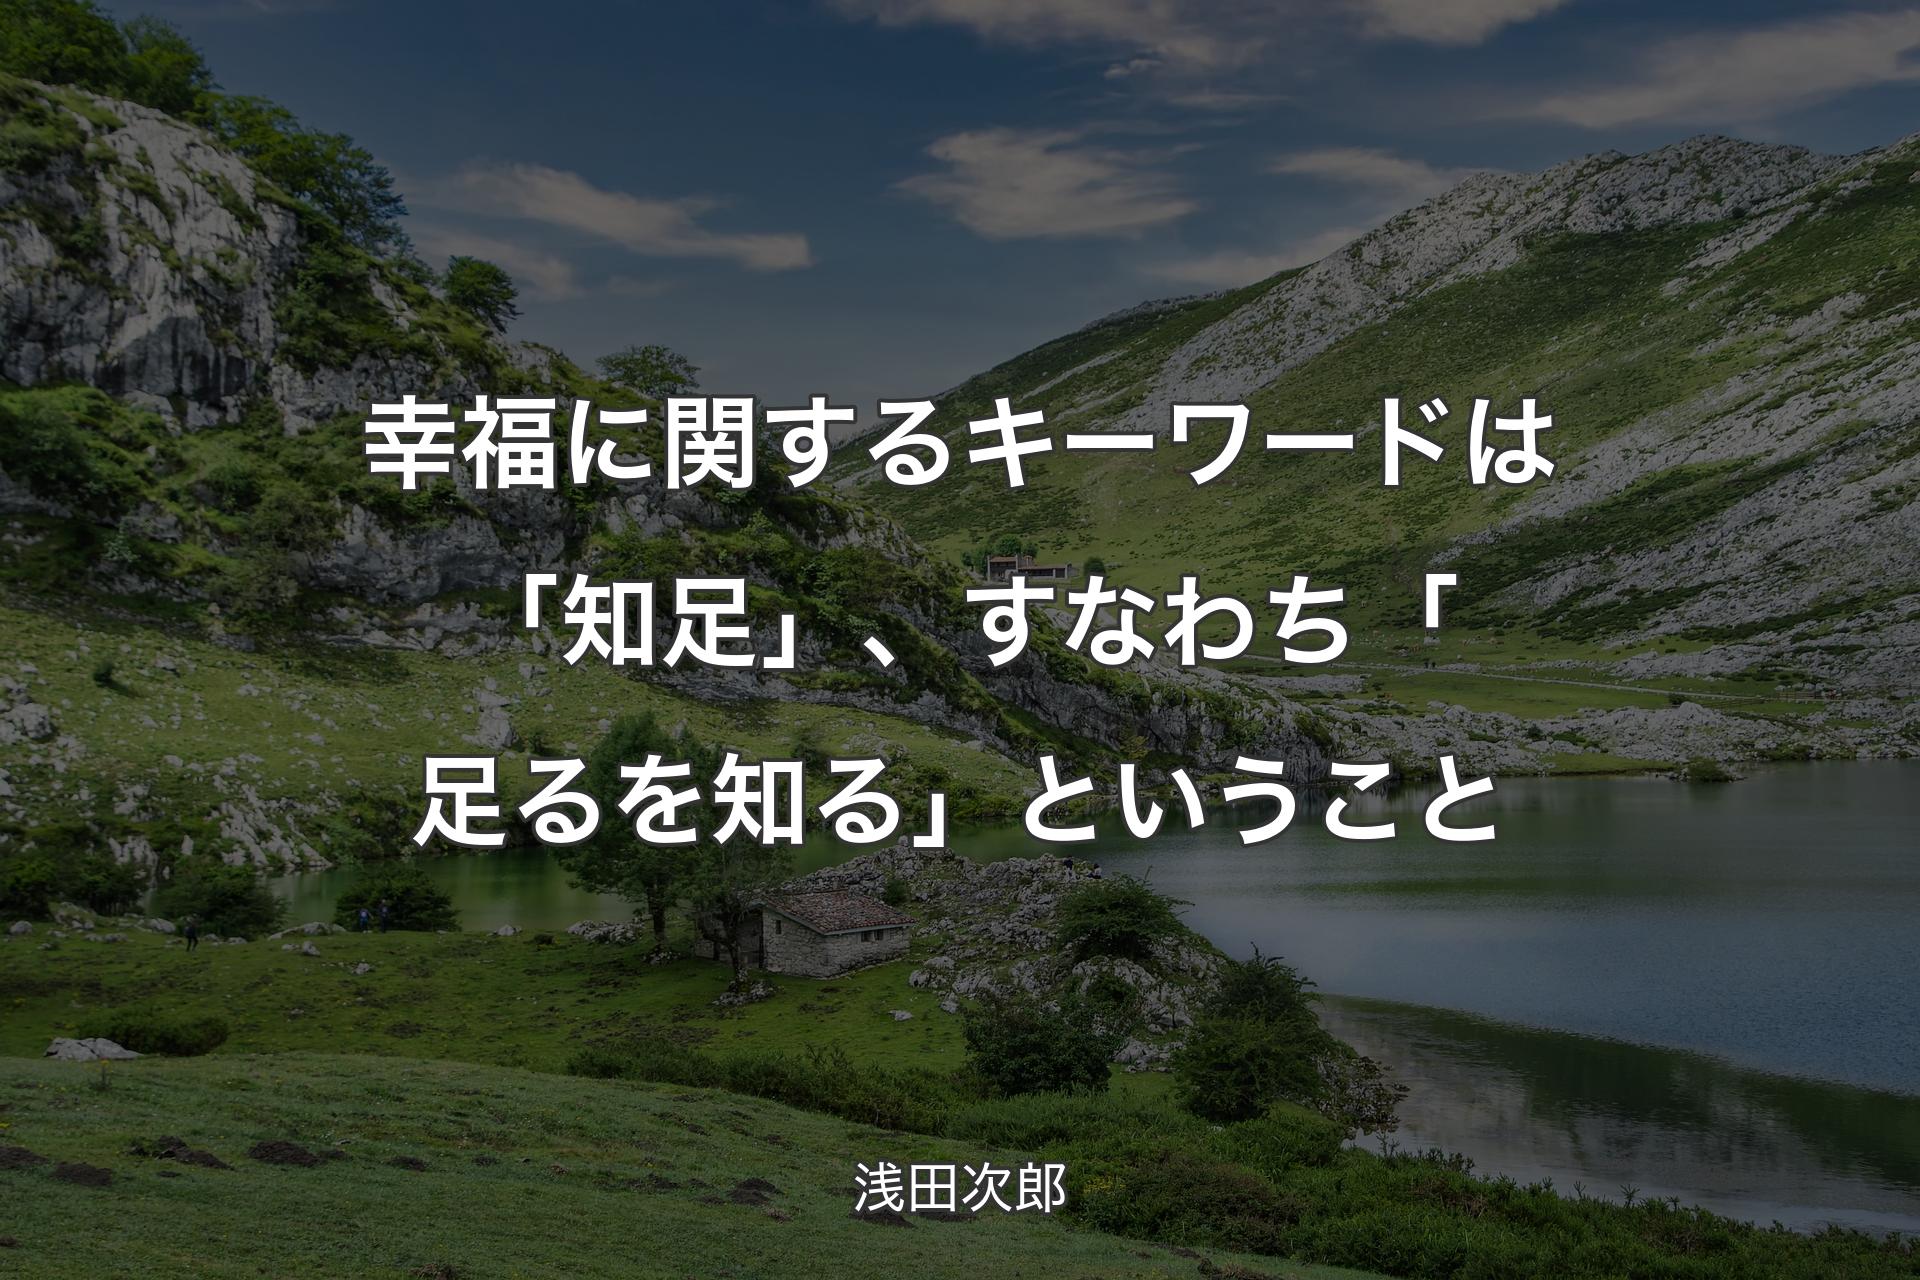 【背景1】幸福に関するキーワードは「知足」、すなわち「足るを知る」ということ - 浅田次郎